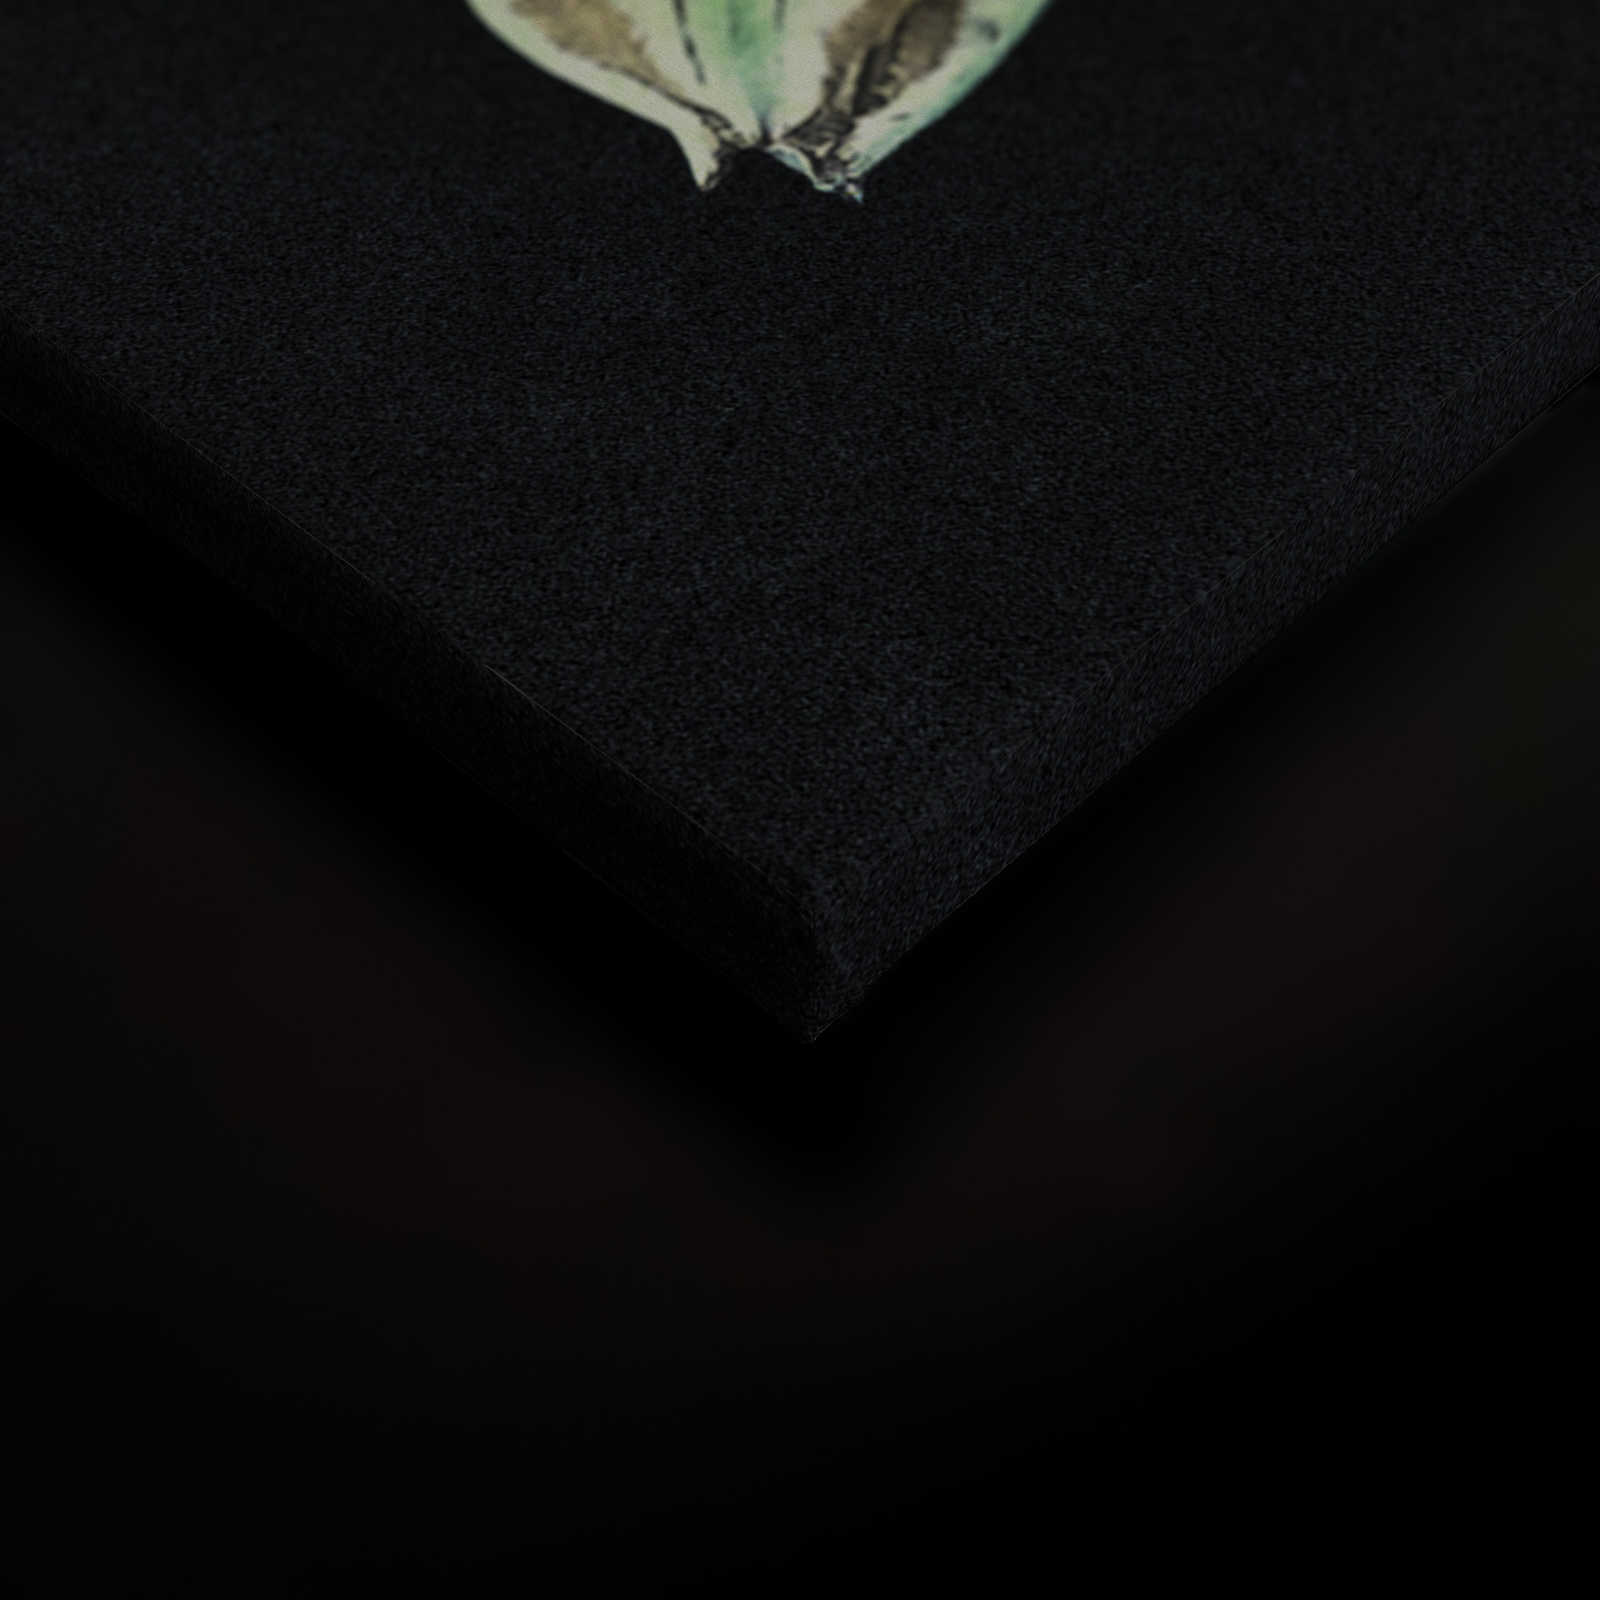             Drama queen 2 - Quadro su tela con bouquet e struttura in cartone di colore verde - 0,90 m x 0,60 m
        